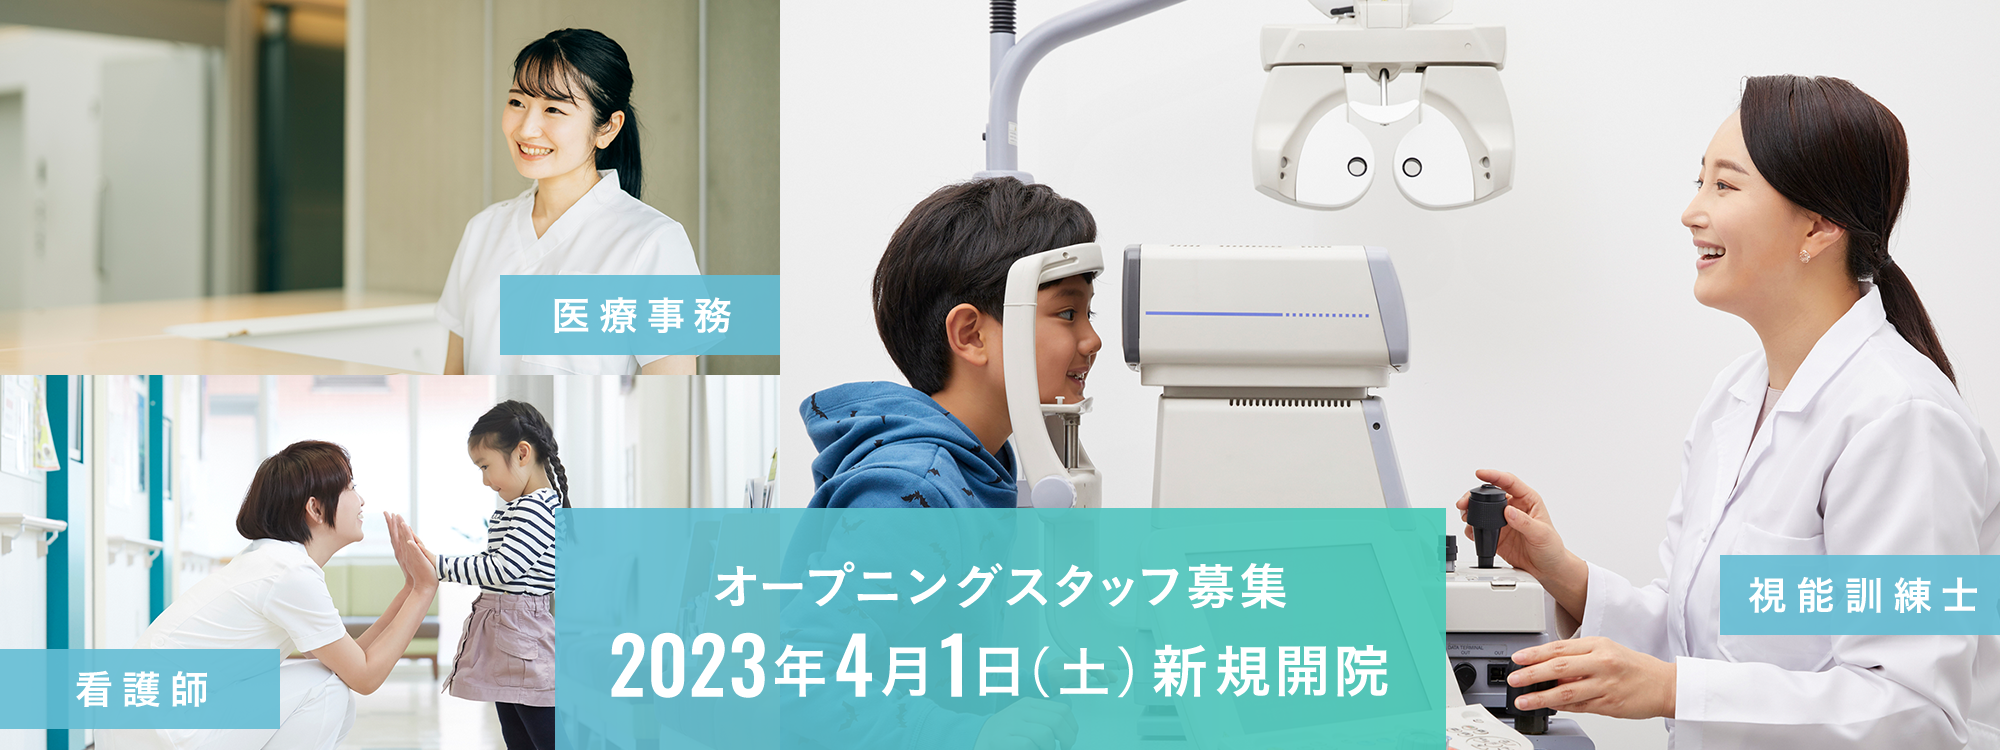 オープニングスタッフ募集 2023年4月上旬 新規開院 医療事務 看護師 視能訓練士